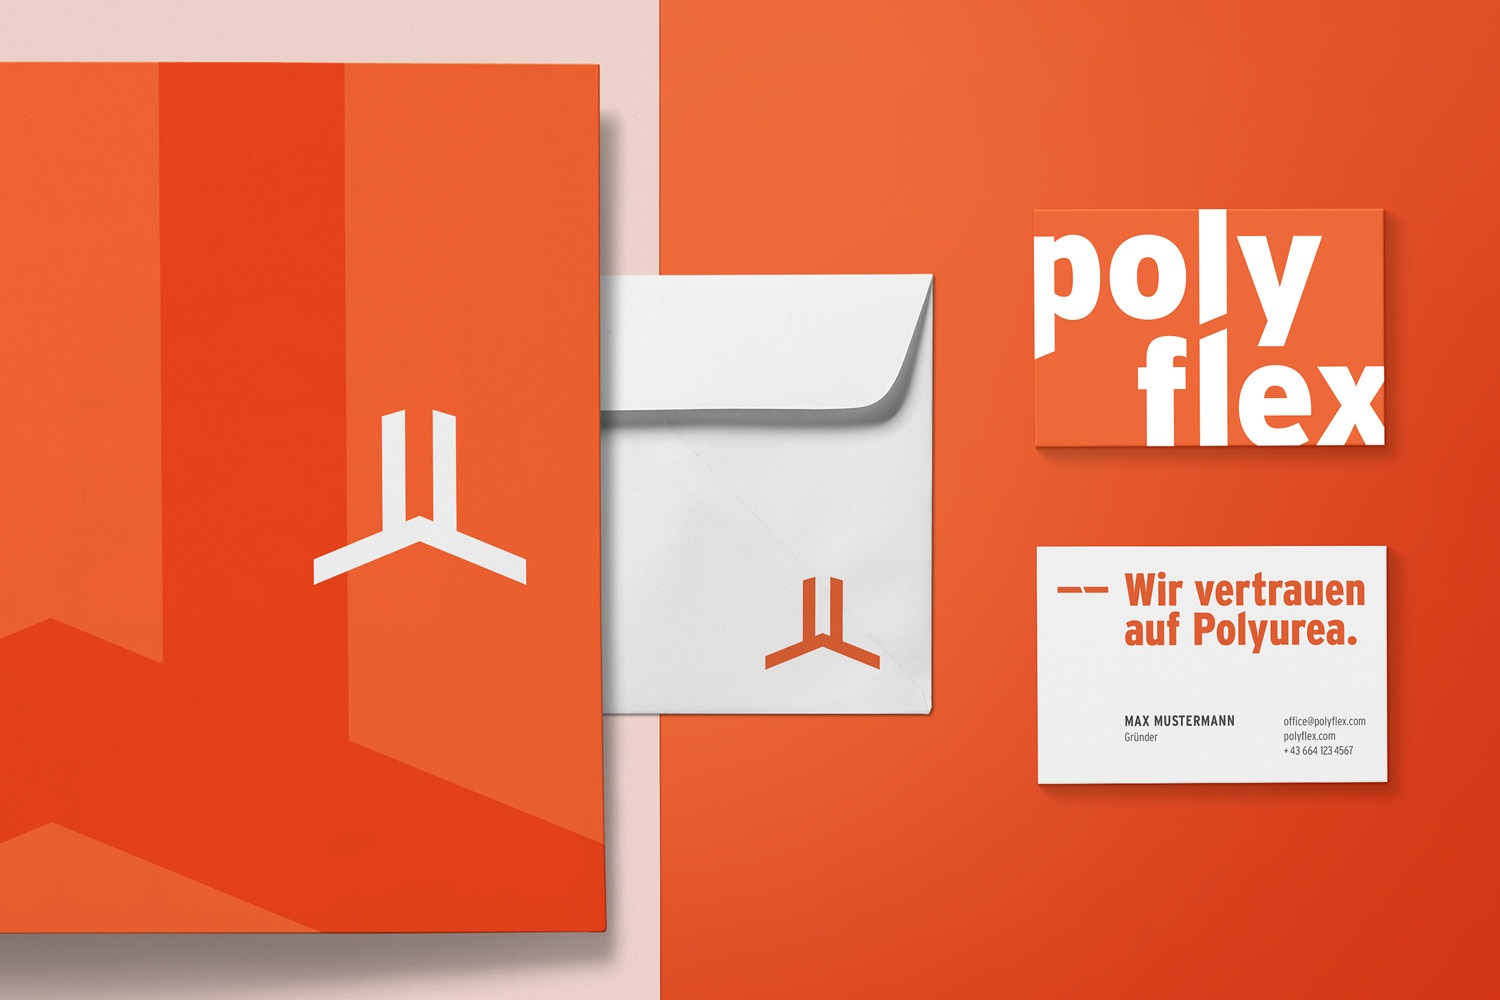 Polyflex logo.